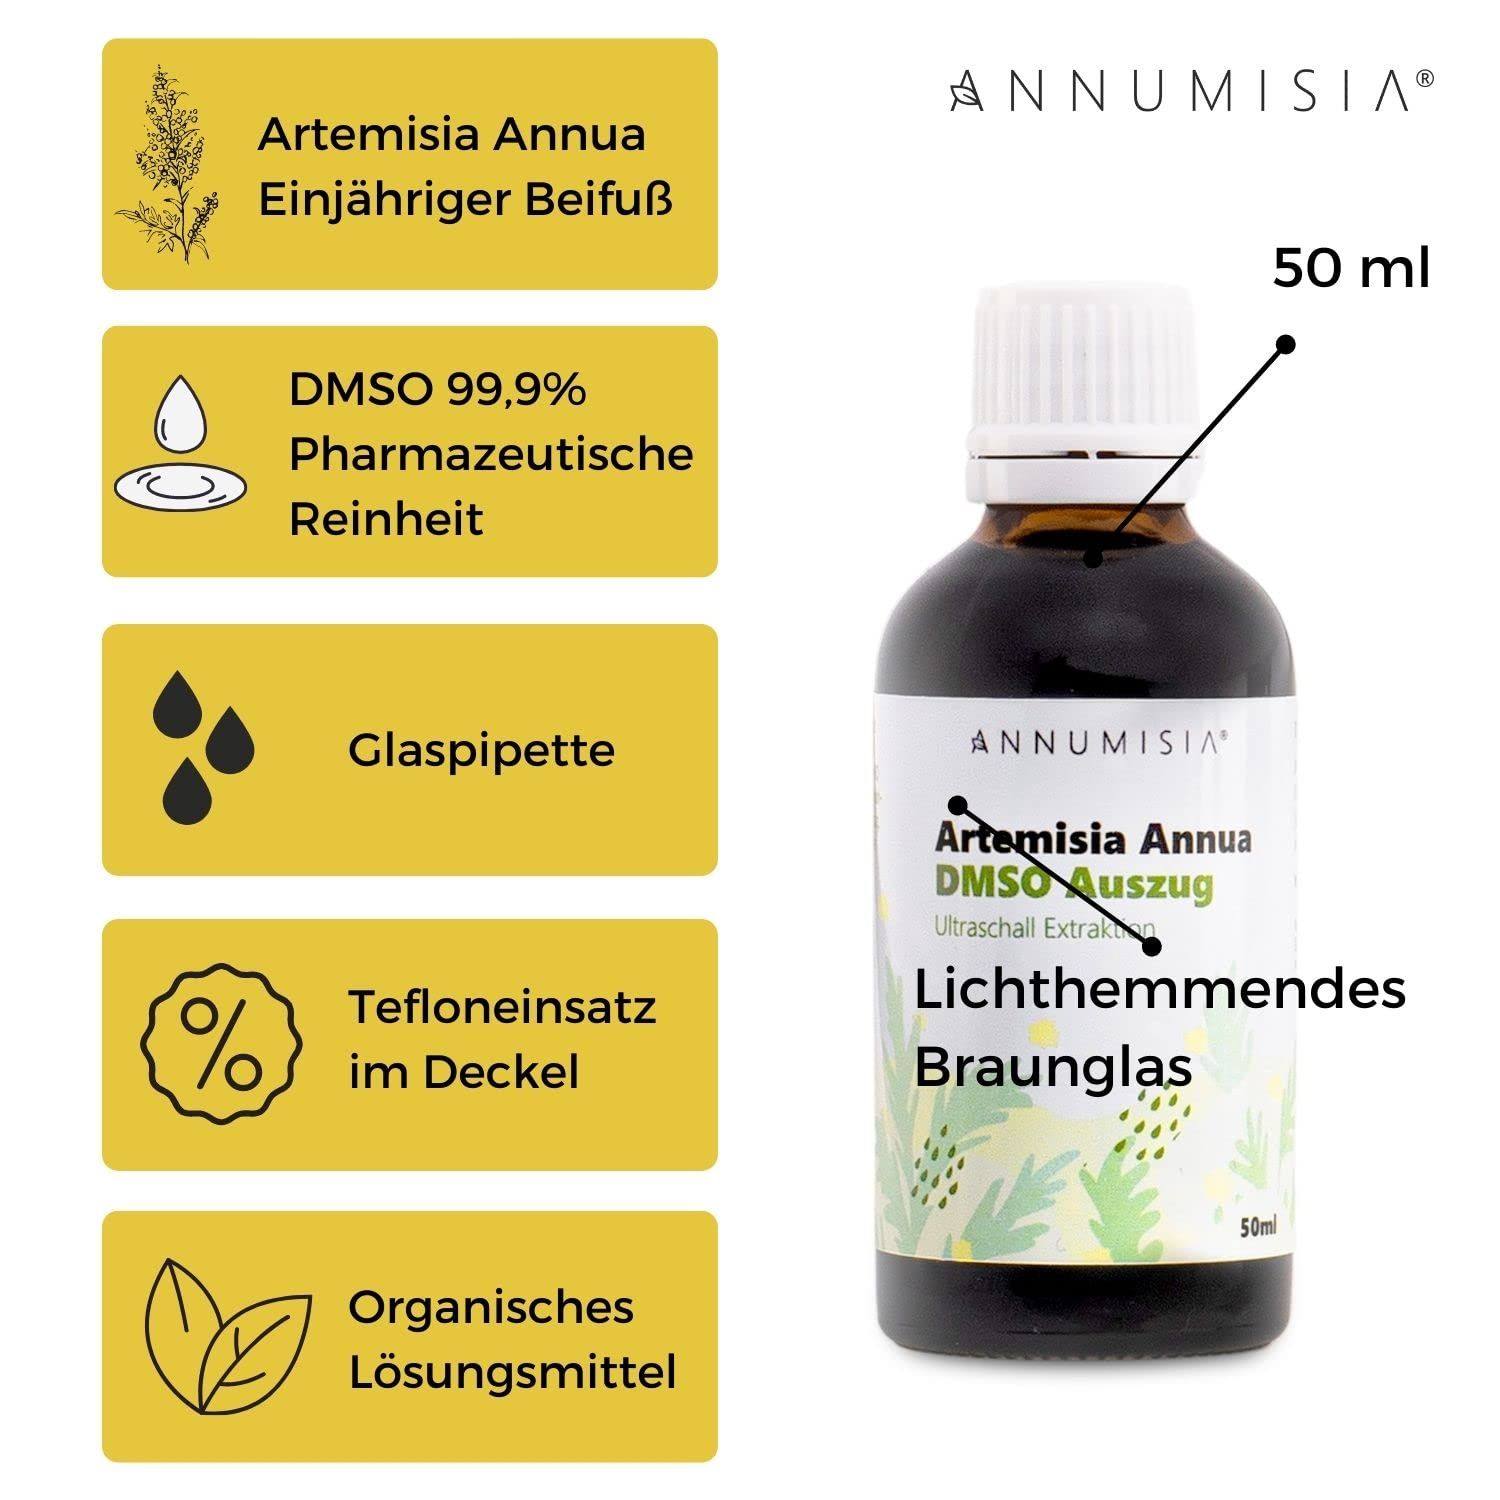 ANNUMISIA® Artemisia Annua DMSO Auszug